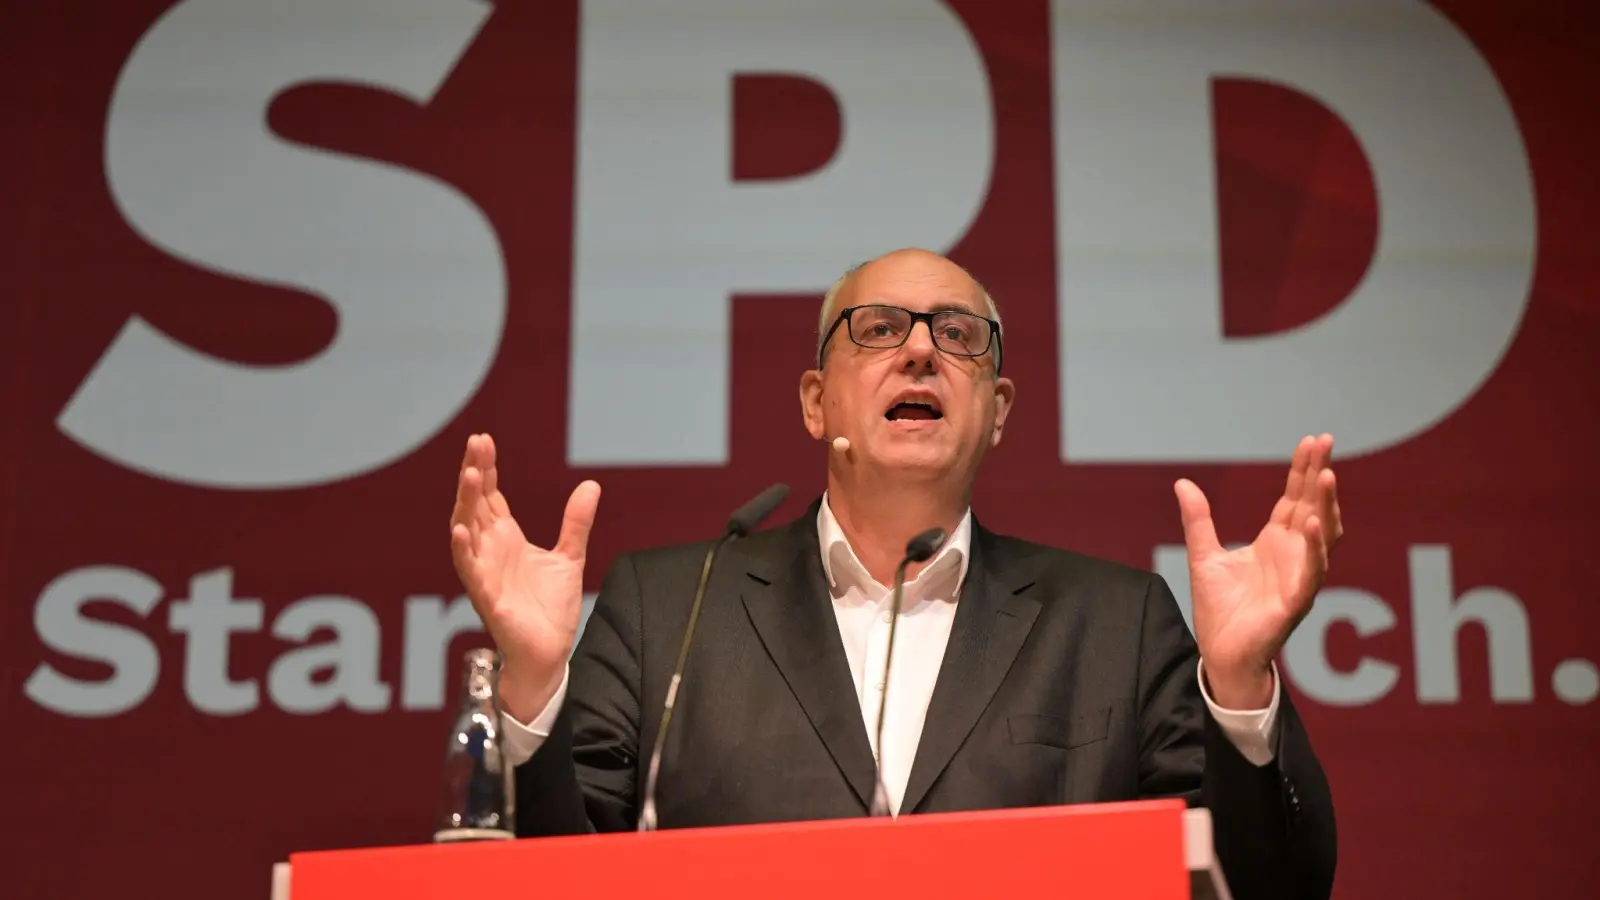 Bremens Bürgermeister Andreas Bovenschulte (SPD) während des Landesparteitags der SPD Bremen. (Foto: Mohssen Assanimoghaddam/dpa)